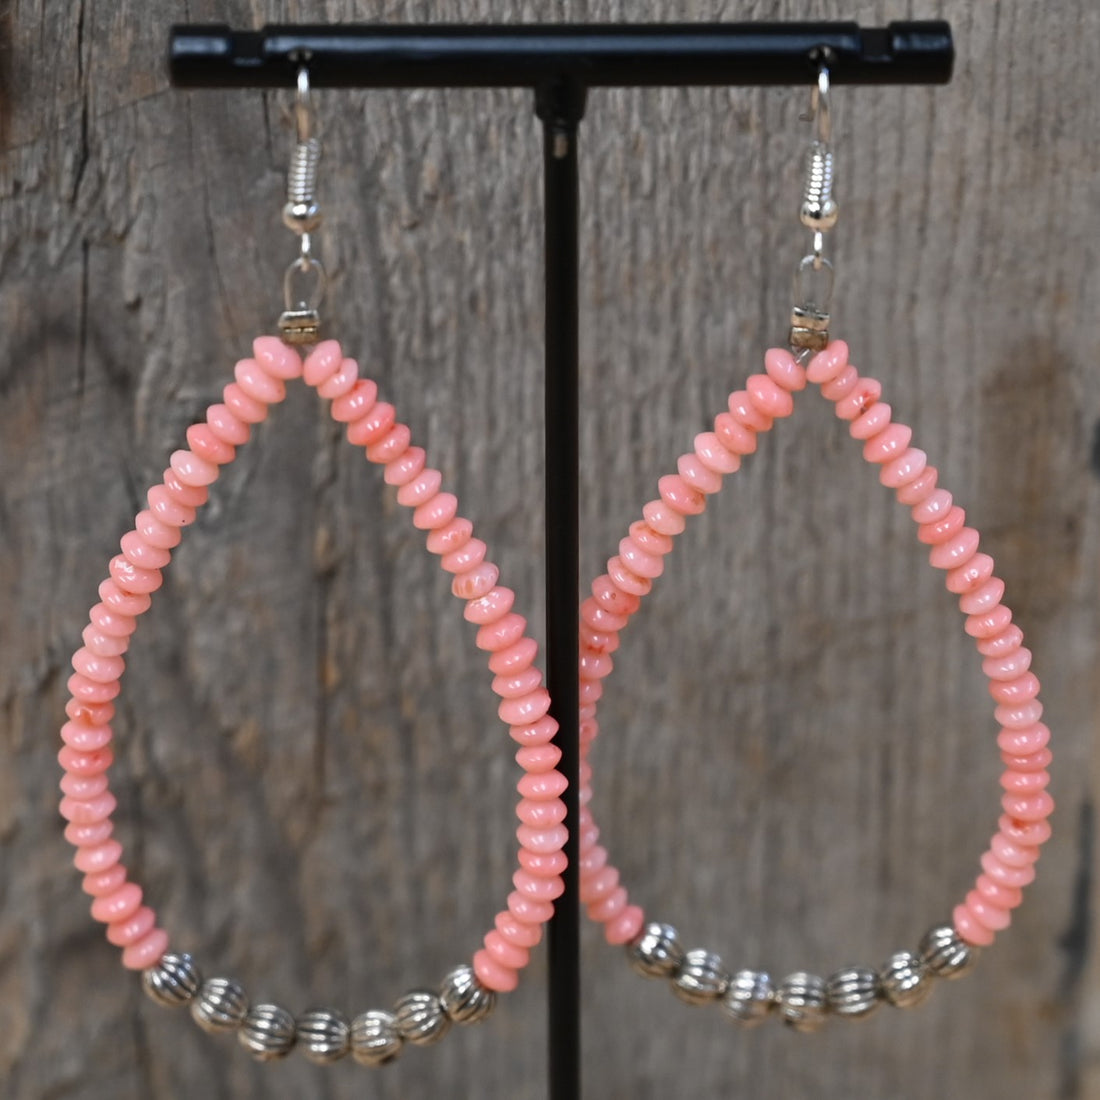 Pink Corral Teardrop Earrings - Summer Beauty view of earrings